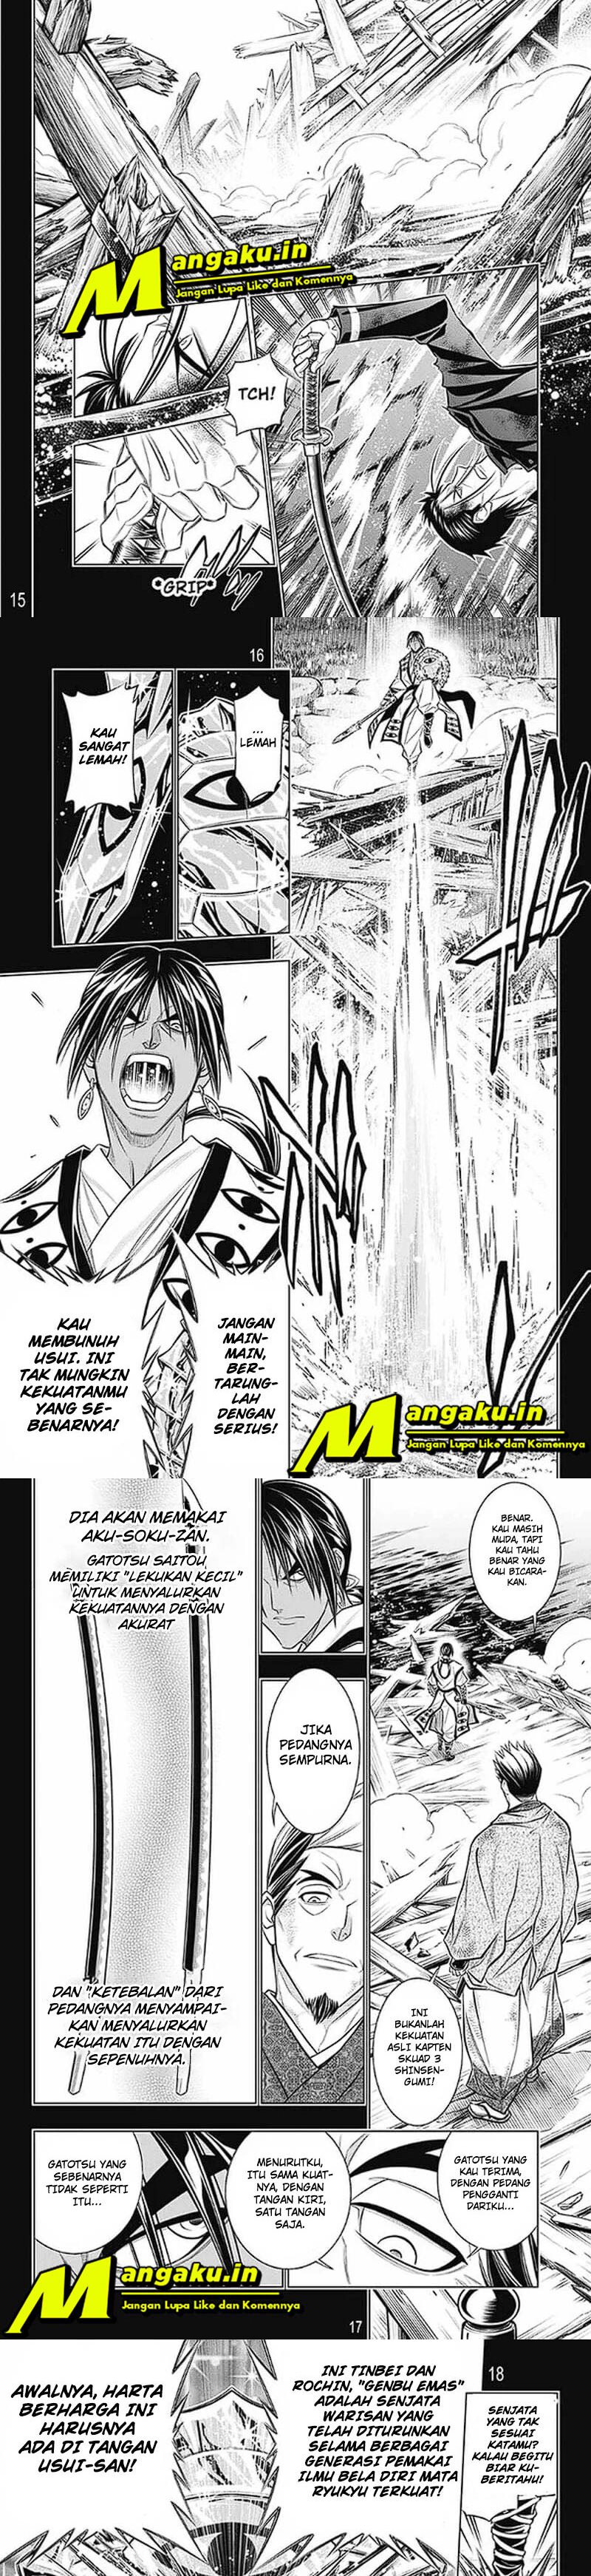 Rurouni Kenshin: Meiji Kenkaku Romantan – Hokkaido-hen Chapter 48